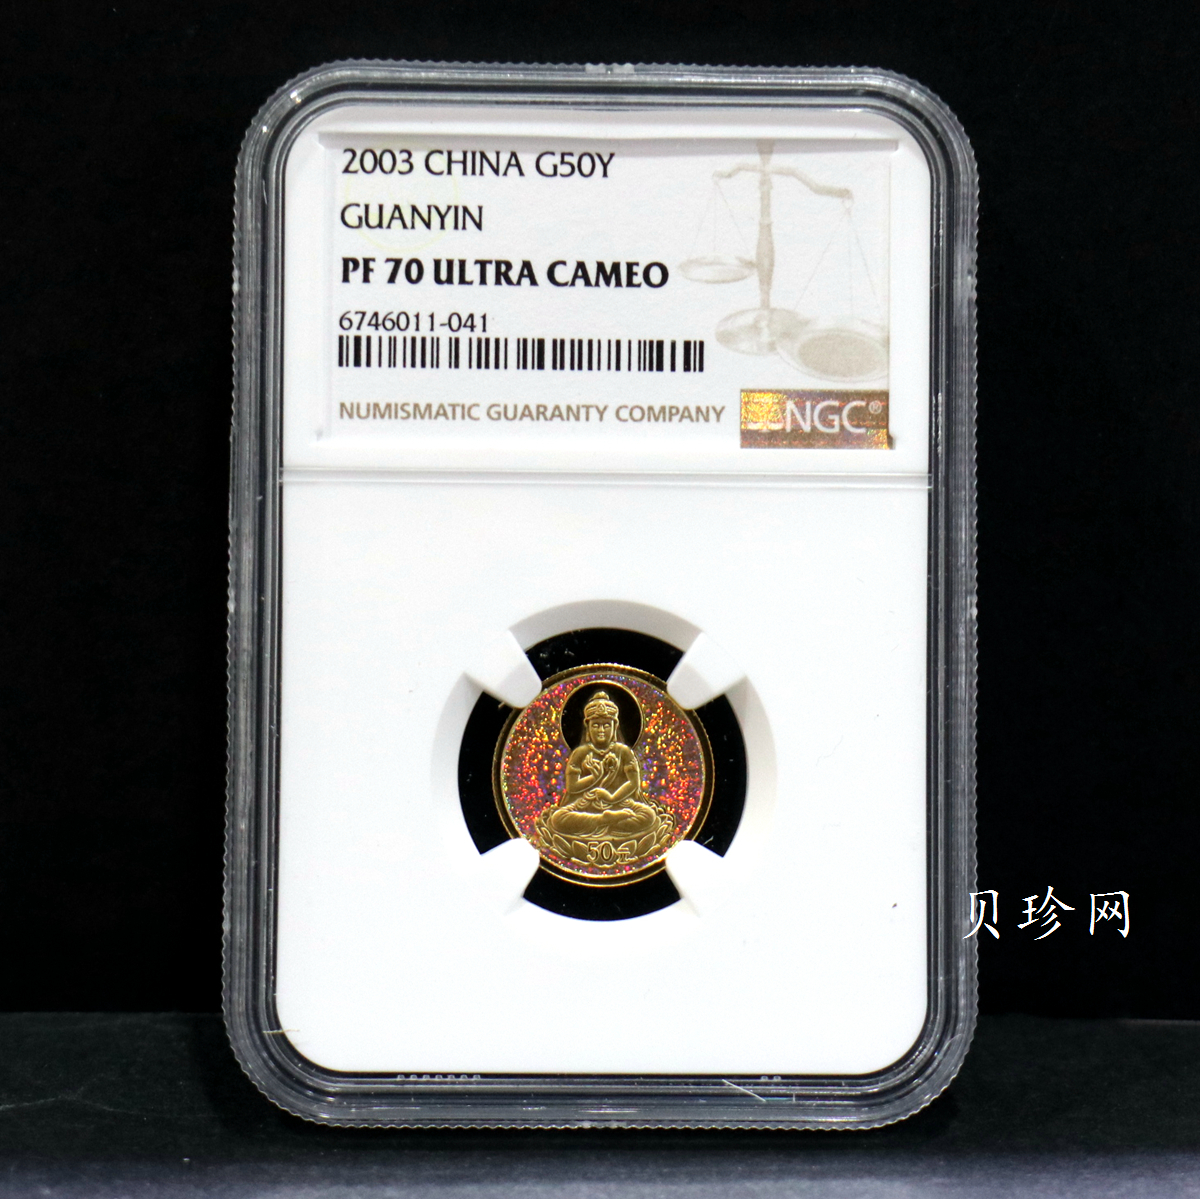 【031001】2003年观音纪念币-观音像1/10盎司圆形幻彩精制金币